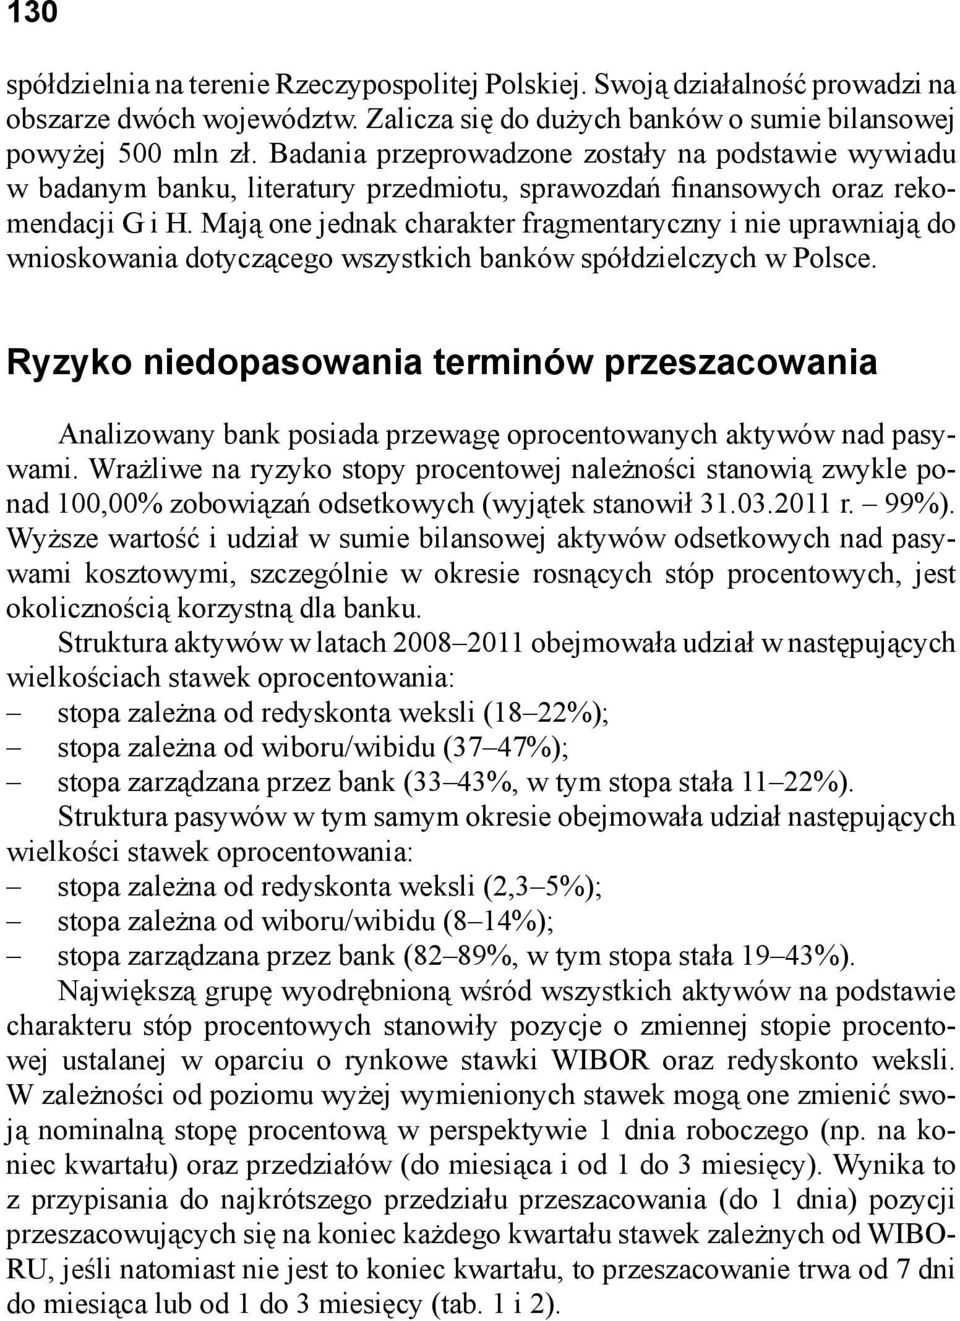 Mają one jednak charakter fragmentaryczny i nie uprawniają do wnioskowania dotyczącego wszystkich banków spółdzielczych w Polsce.